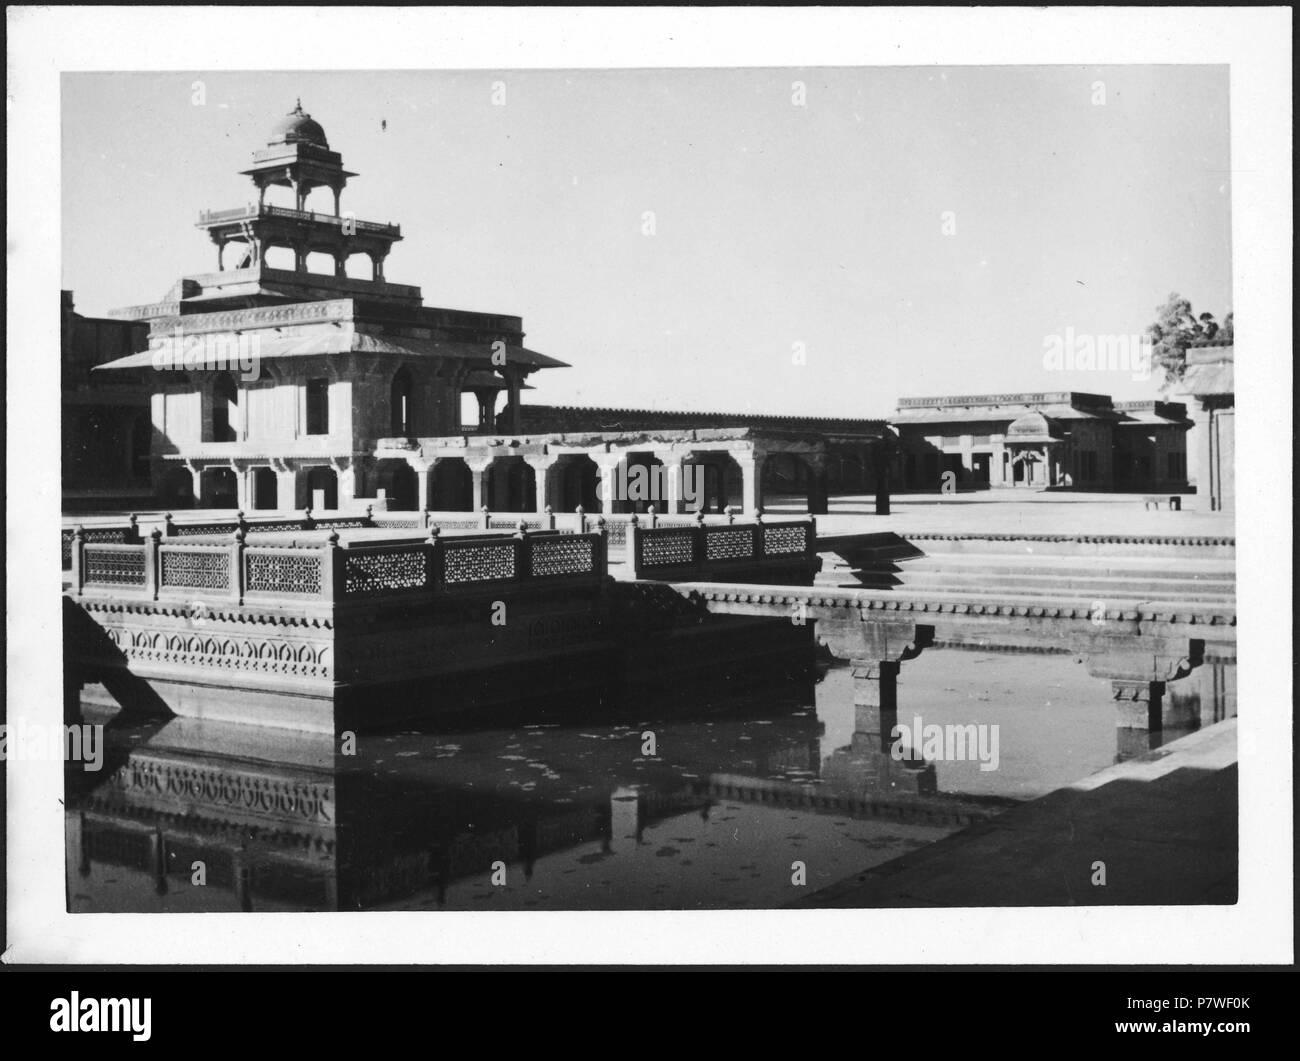 Britisch-Indien, Fatehpur Sikri: Palast; Ein töpfermarkt ein Einems Teich. Von 1939 bis 1940 68 CH-NB-Britisch-Indien, Fatehpur Sikri-Palast - Annemarie Schwarzenbach - SLA-Schwarzenbach-A -5-22-091 Stockfoto